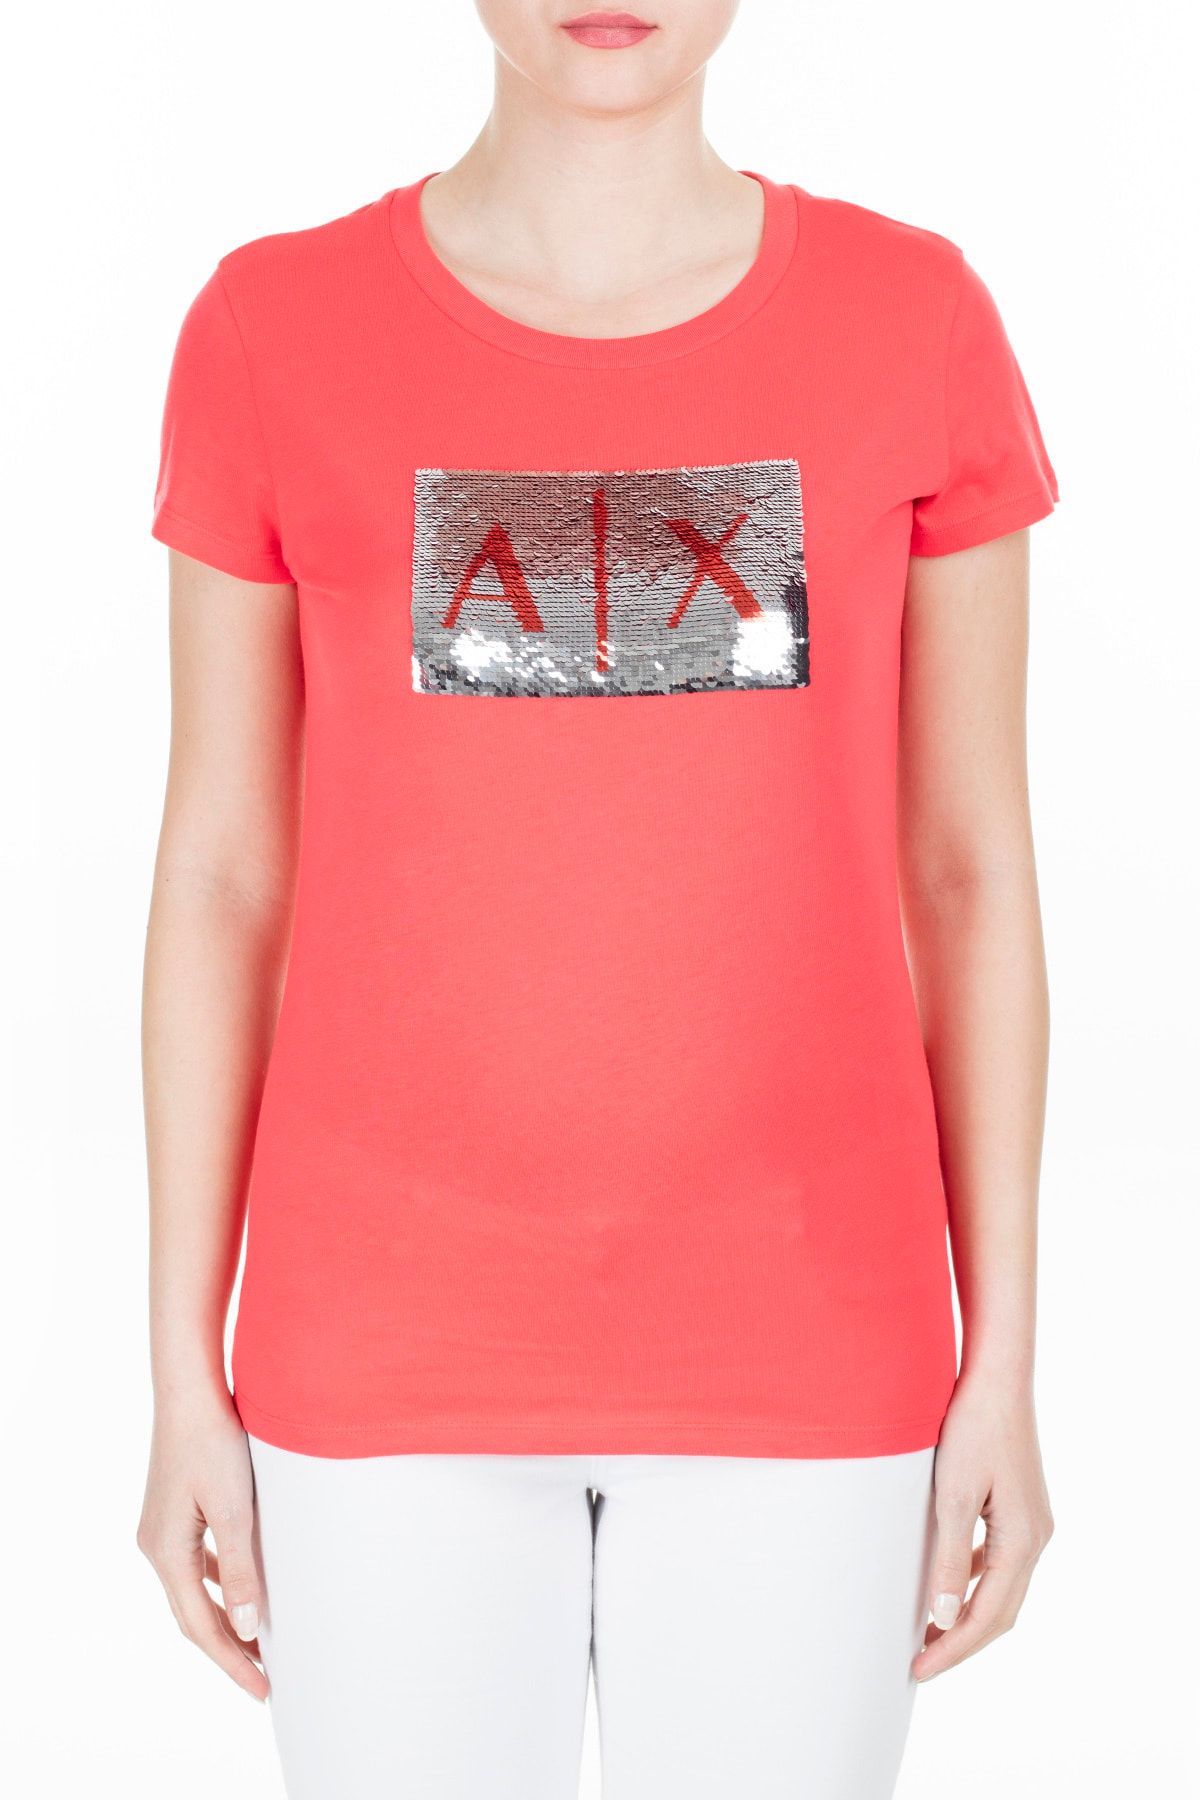 Armani Exchange Kadın Kırmızı T-Shirt 8Nytdl Yj73Z 6425